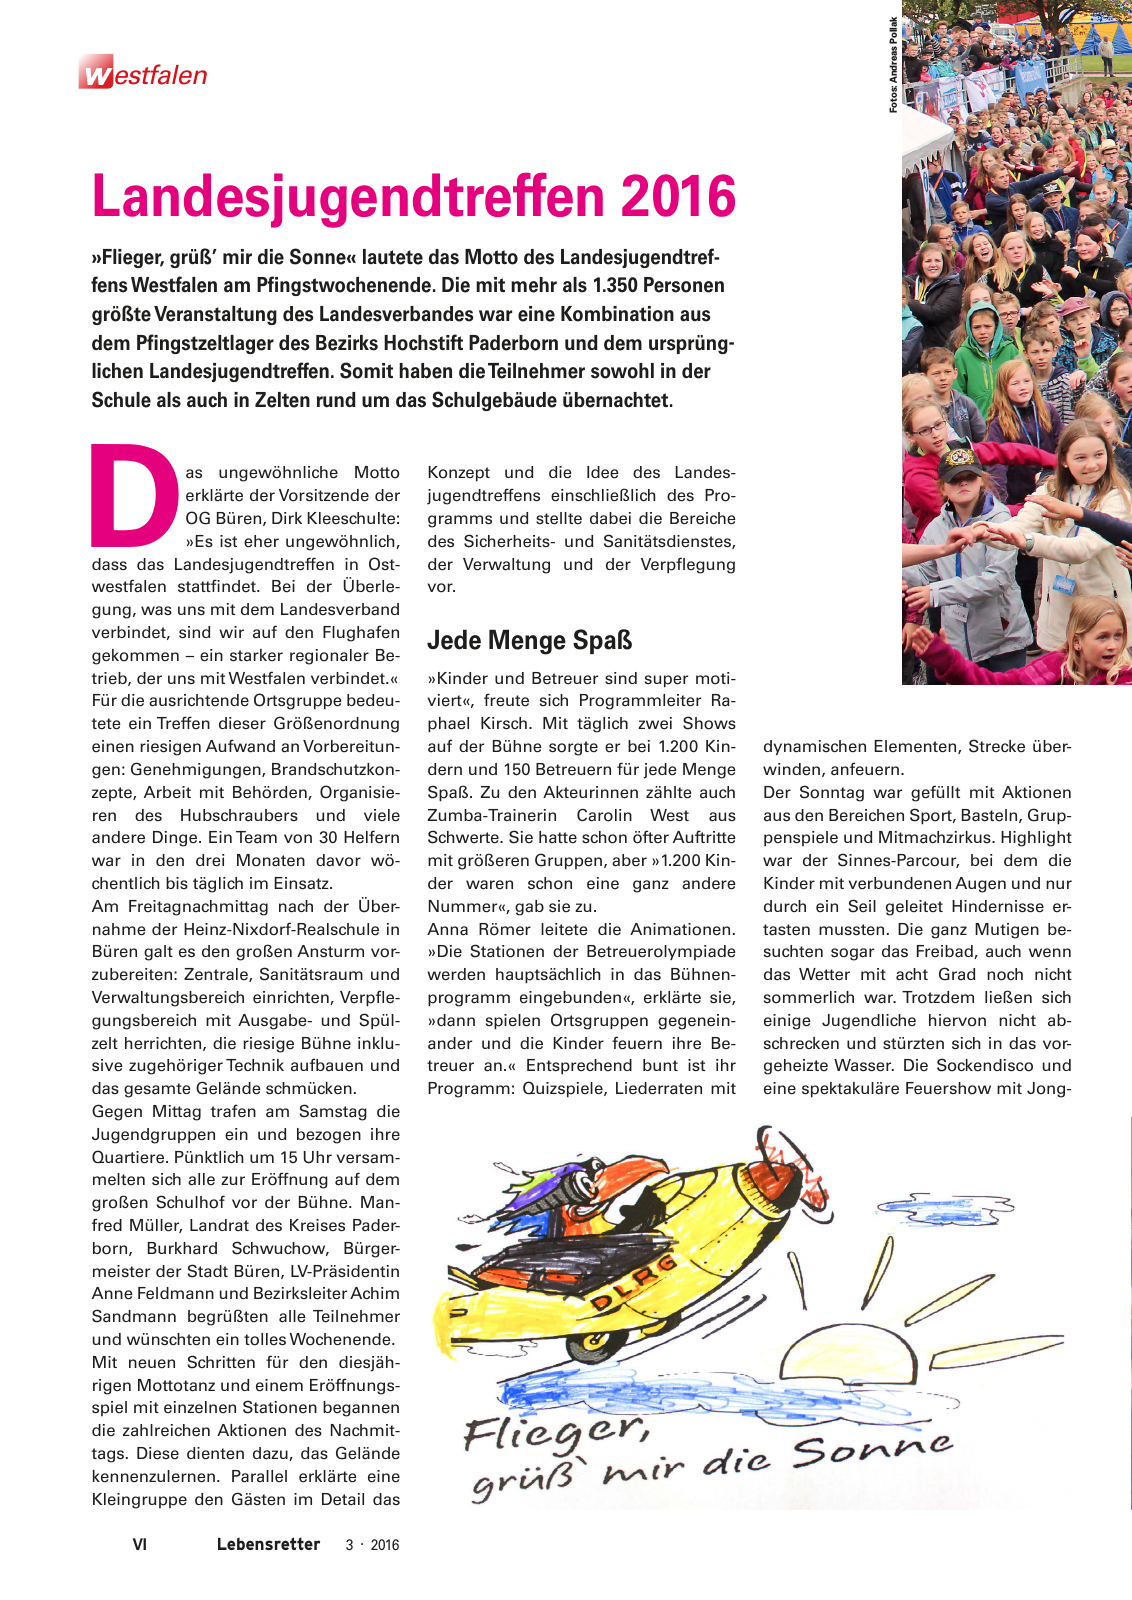 Vorschau Lebensretter 3/2016 - Regionalausgabe Westfalen Seite 8